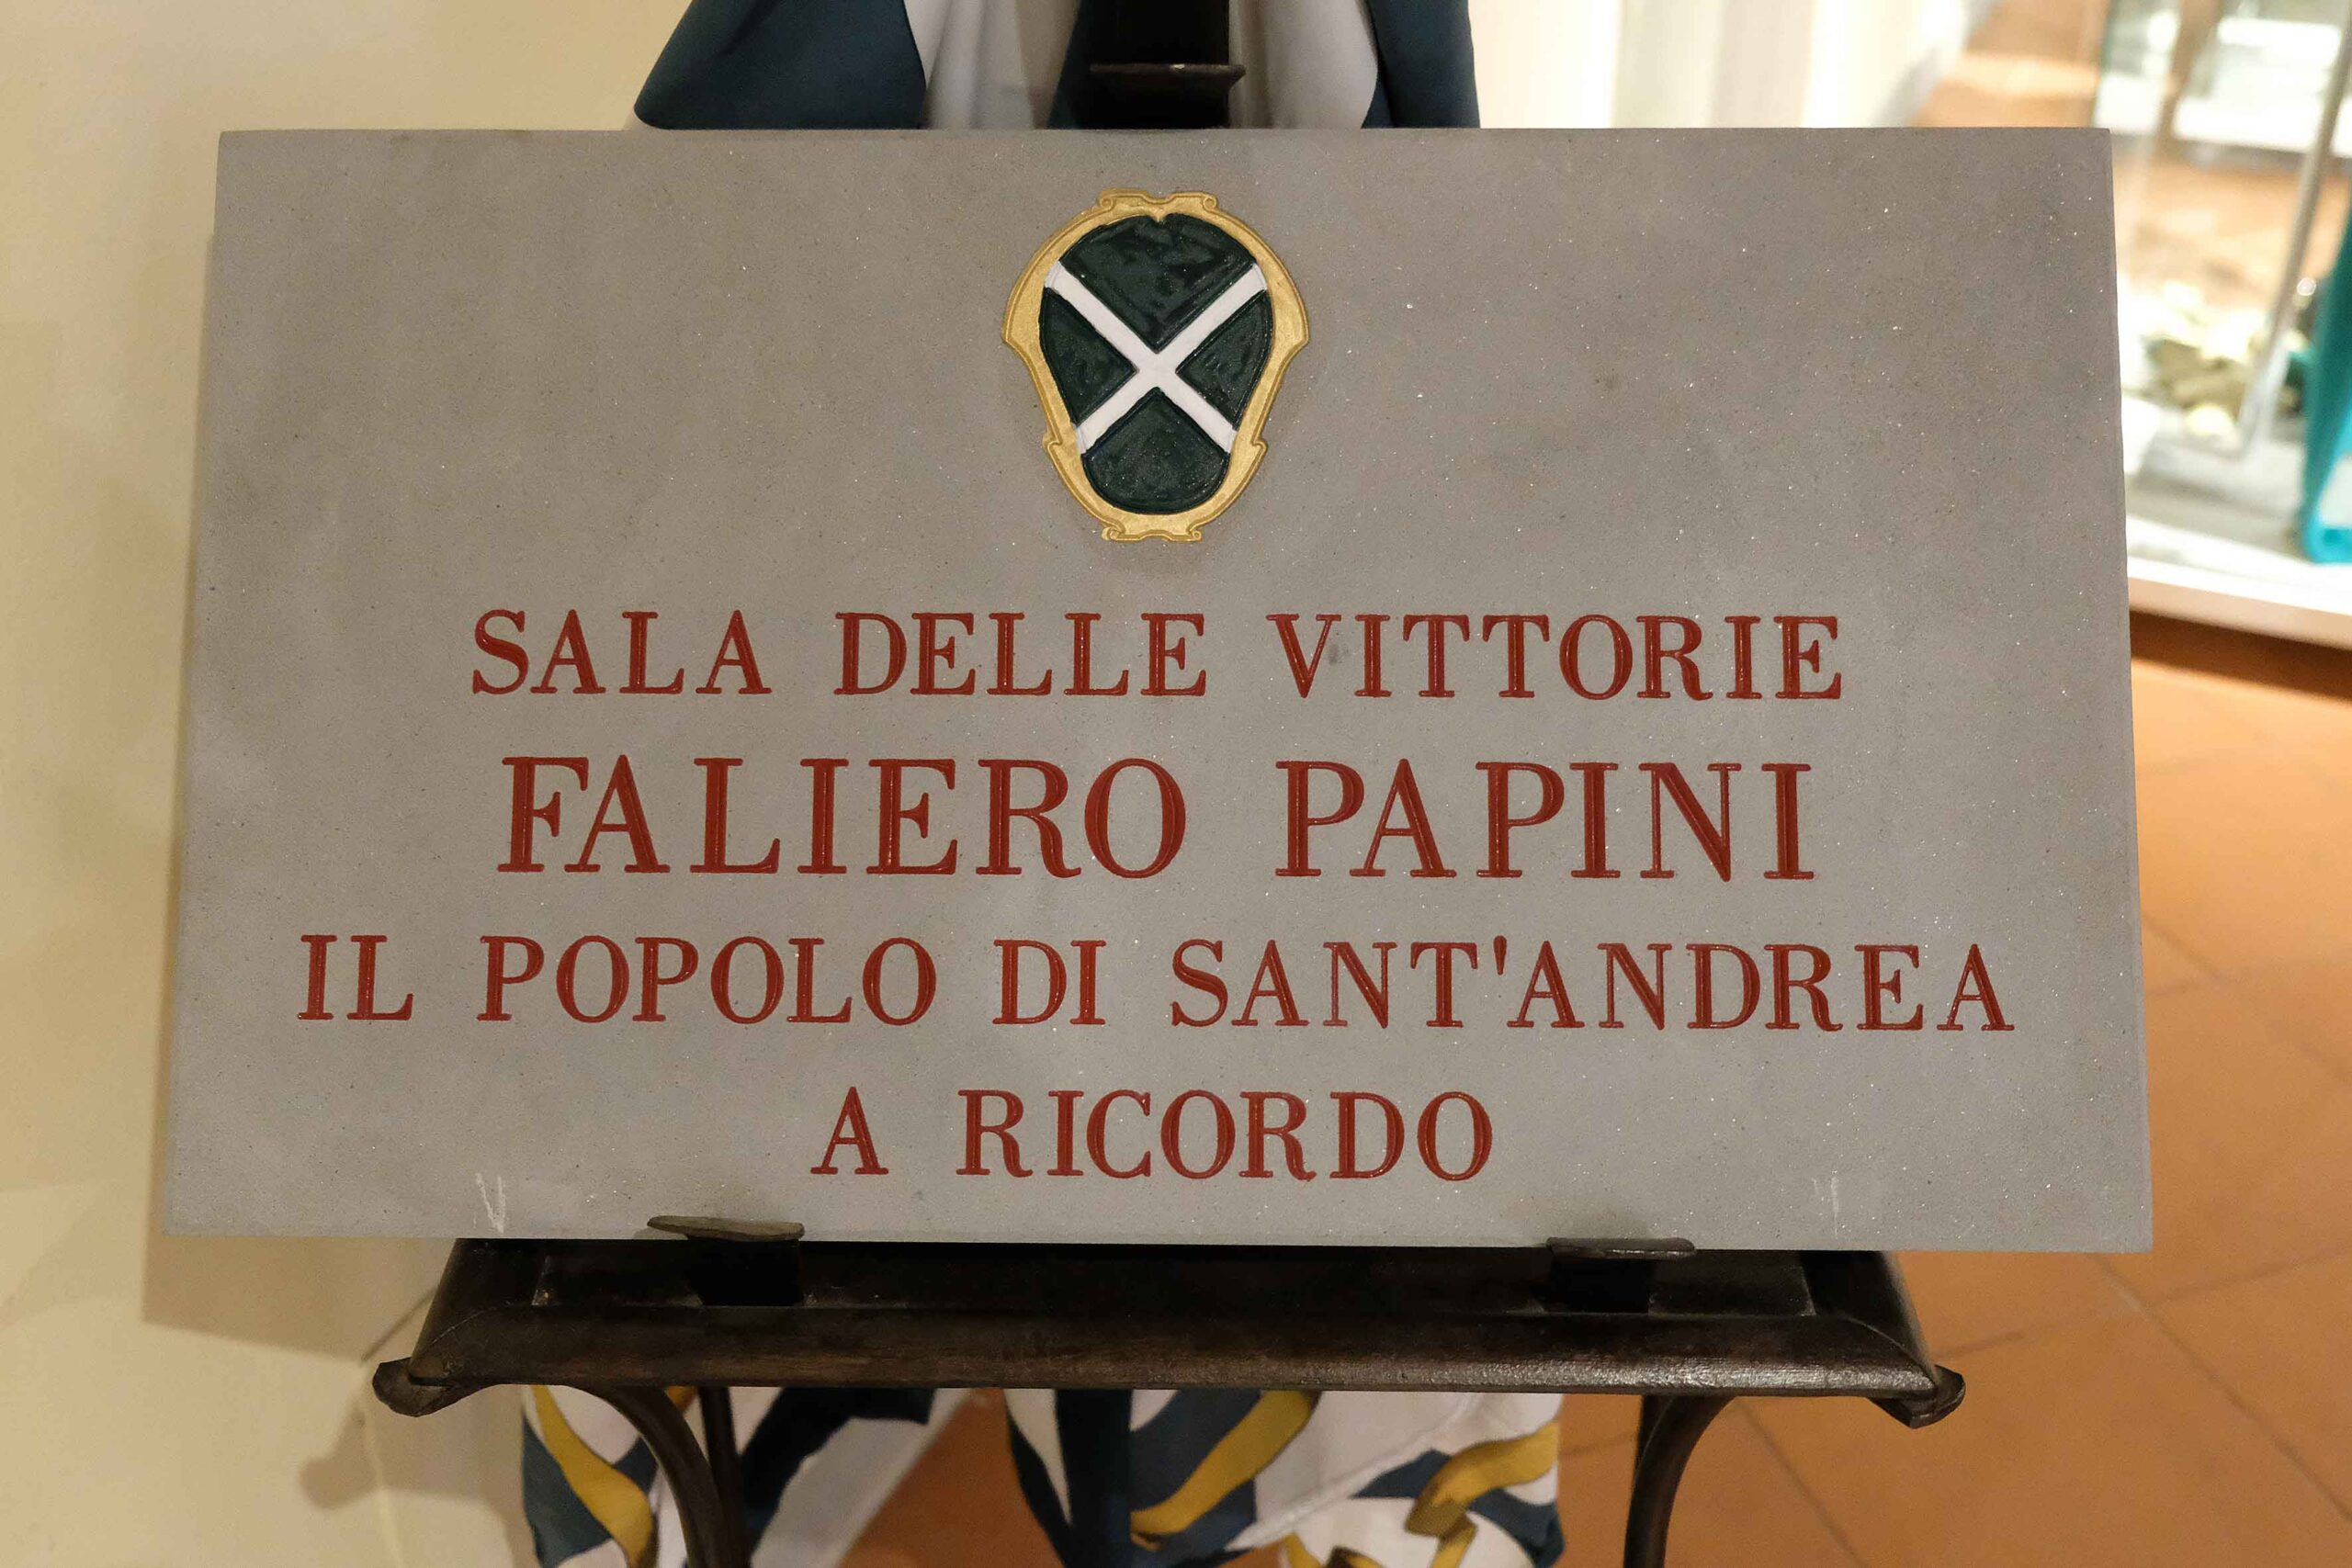 Porta Sant’Andrea: questa mattina la Sala delle Vittorie a Faliero Papini (foto)